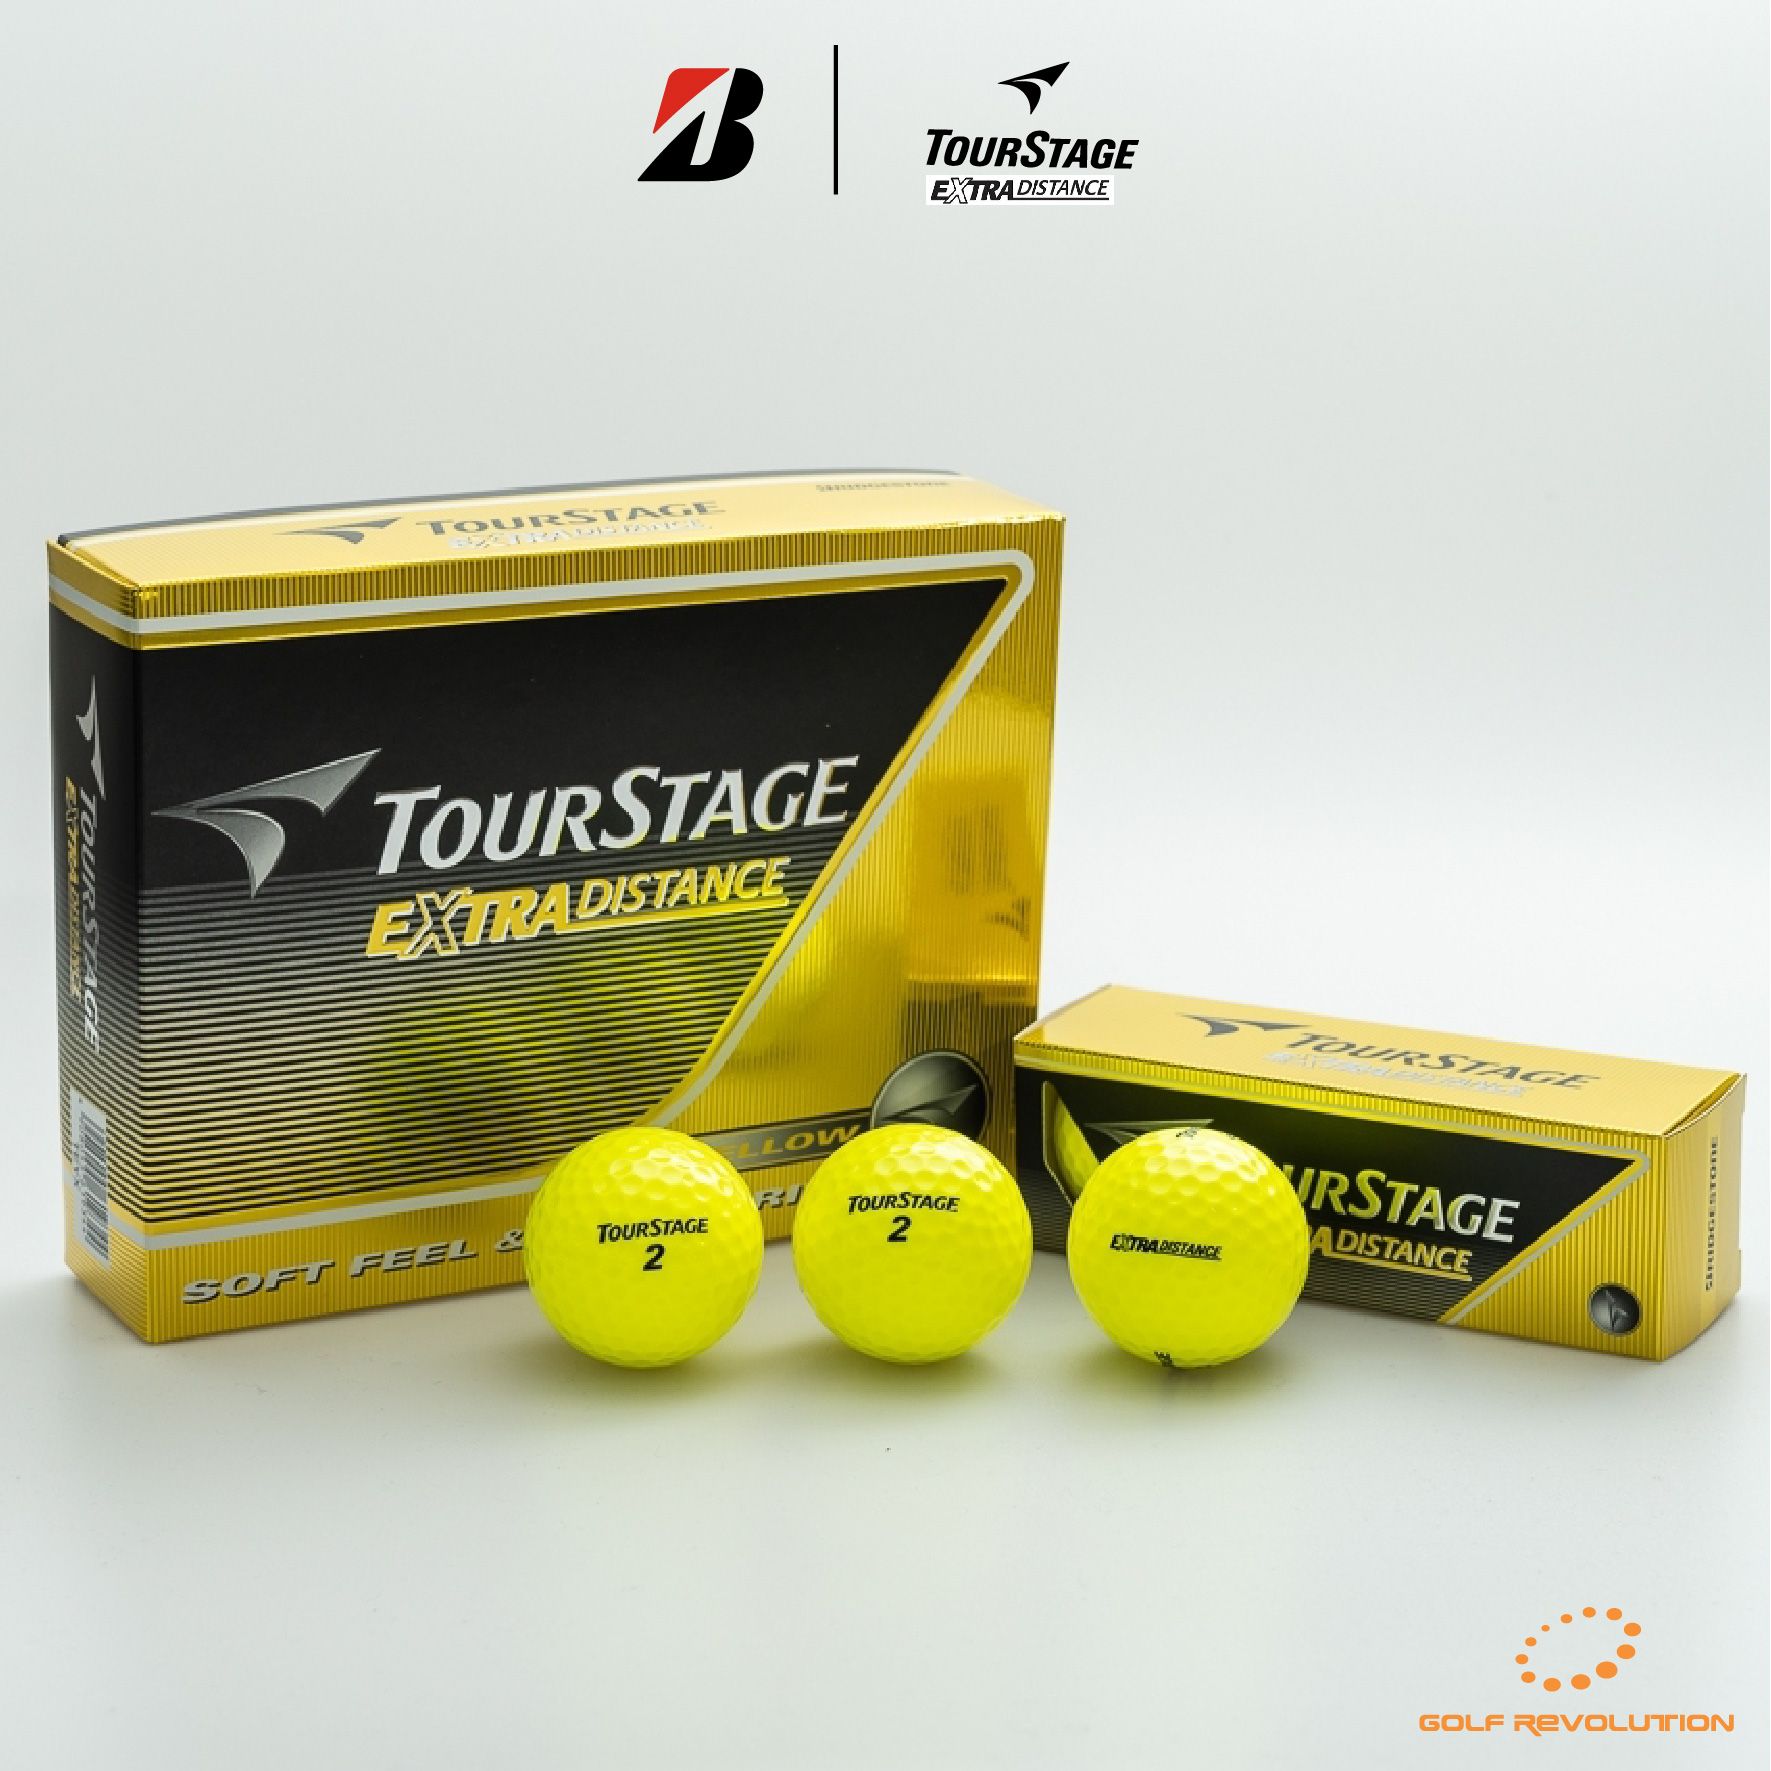 ลูกกอล์ฟ TourStage - Extra Distance Yellow ซื้อ 2 แถม 1, Price: 690 THB/dz  (Promotion : Buy2, Free1)